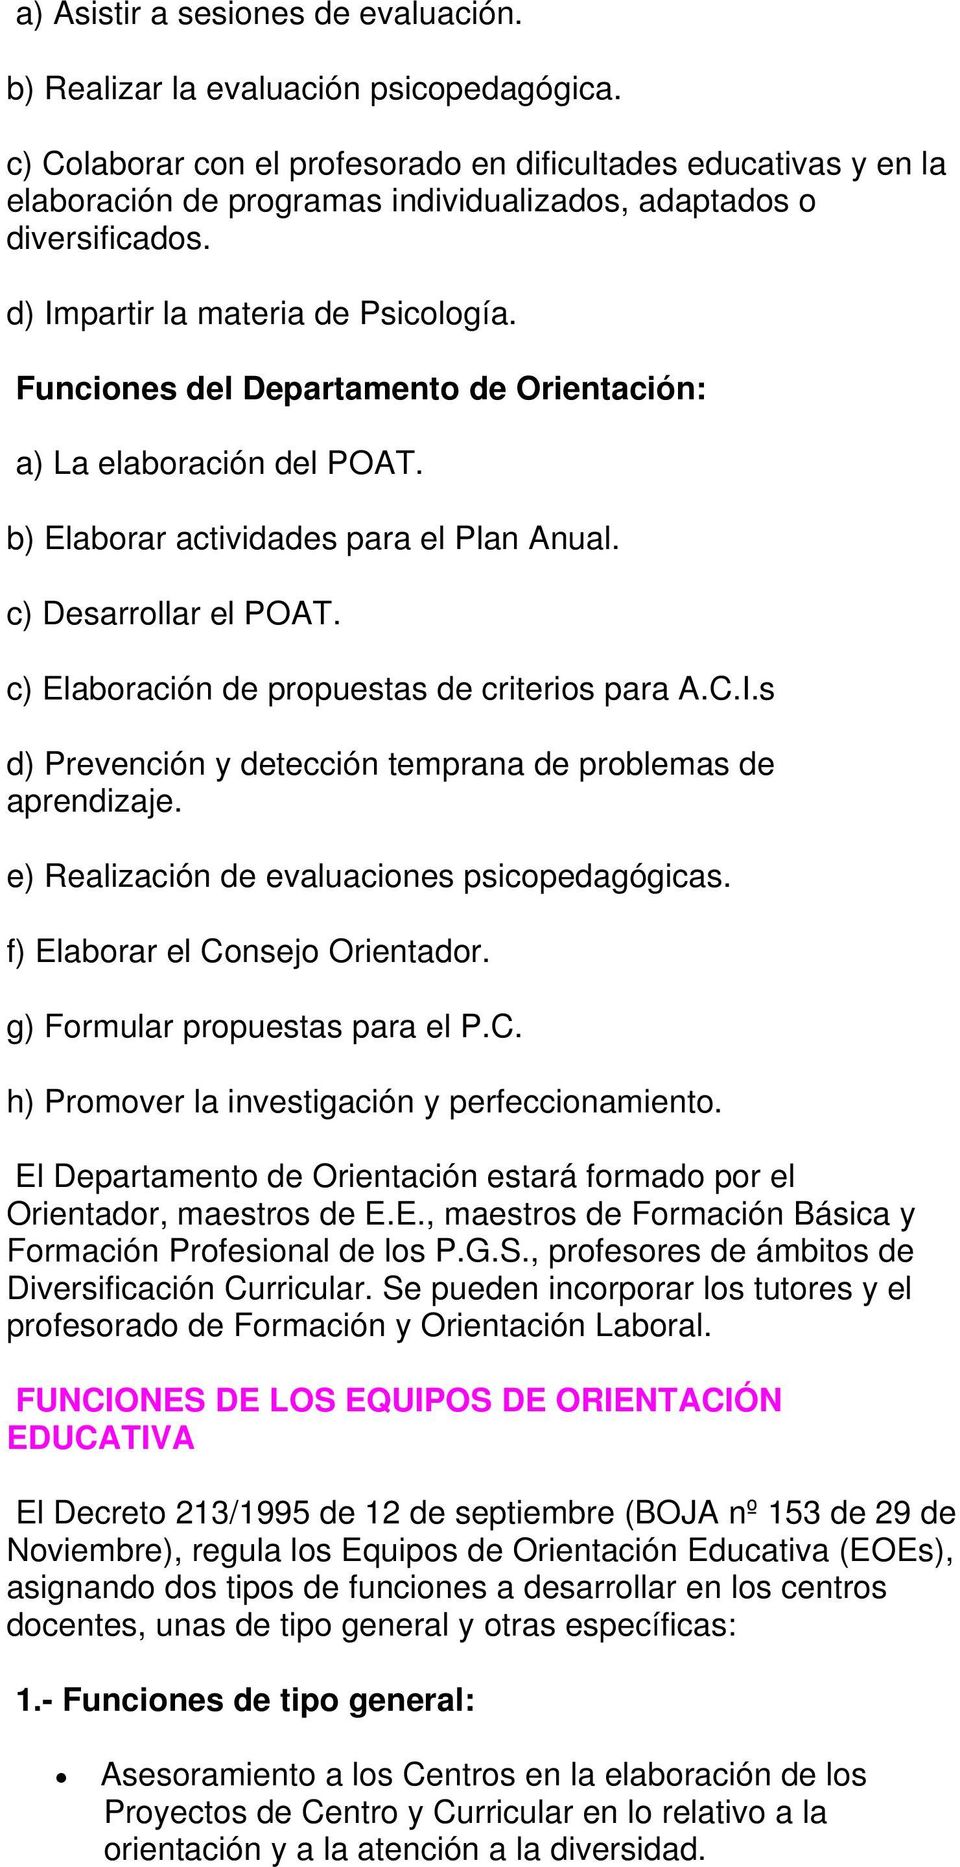 Funciones del Departamento de Orientación: a) La elaboración del POAT. b) Elaborar actividades para el Plan Anual. c) Desarrollar el POAT. c) Elaboración de propuestas de criterios para A.C.I.